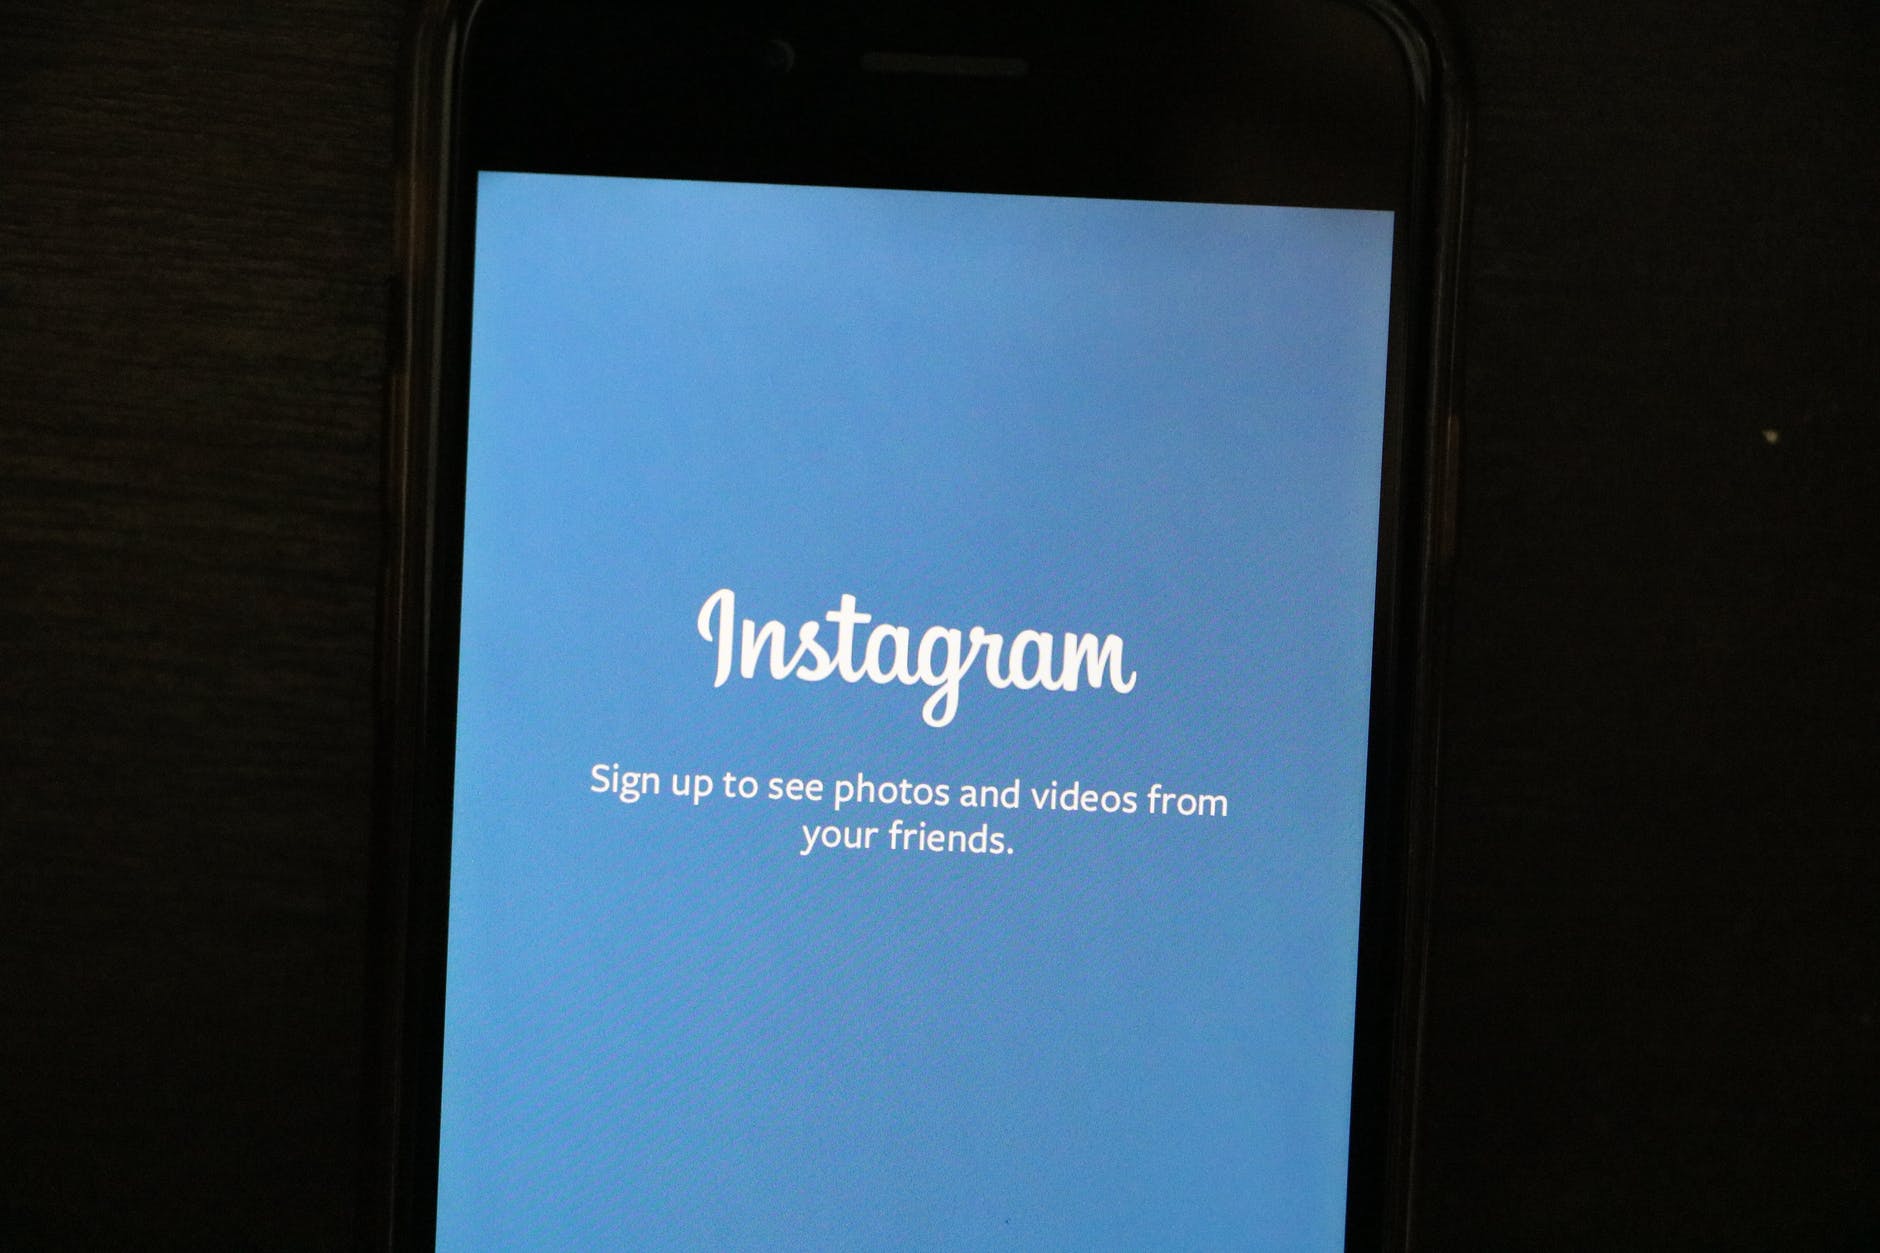 Instagram Siklik Hatasi Nedir ve Nasil Giderilir